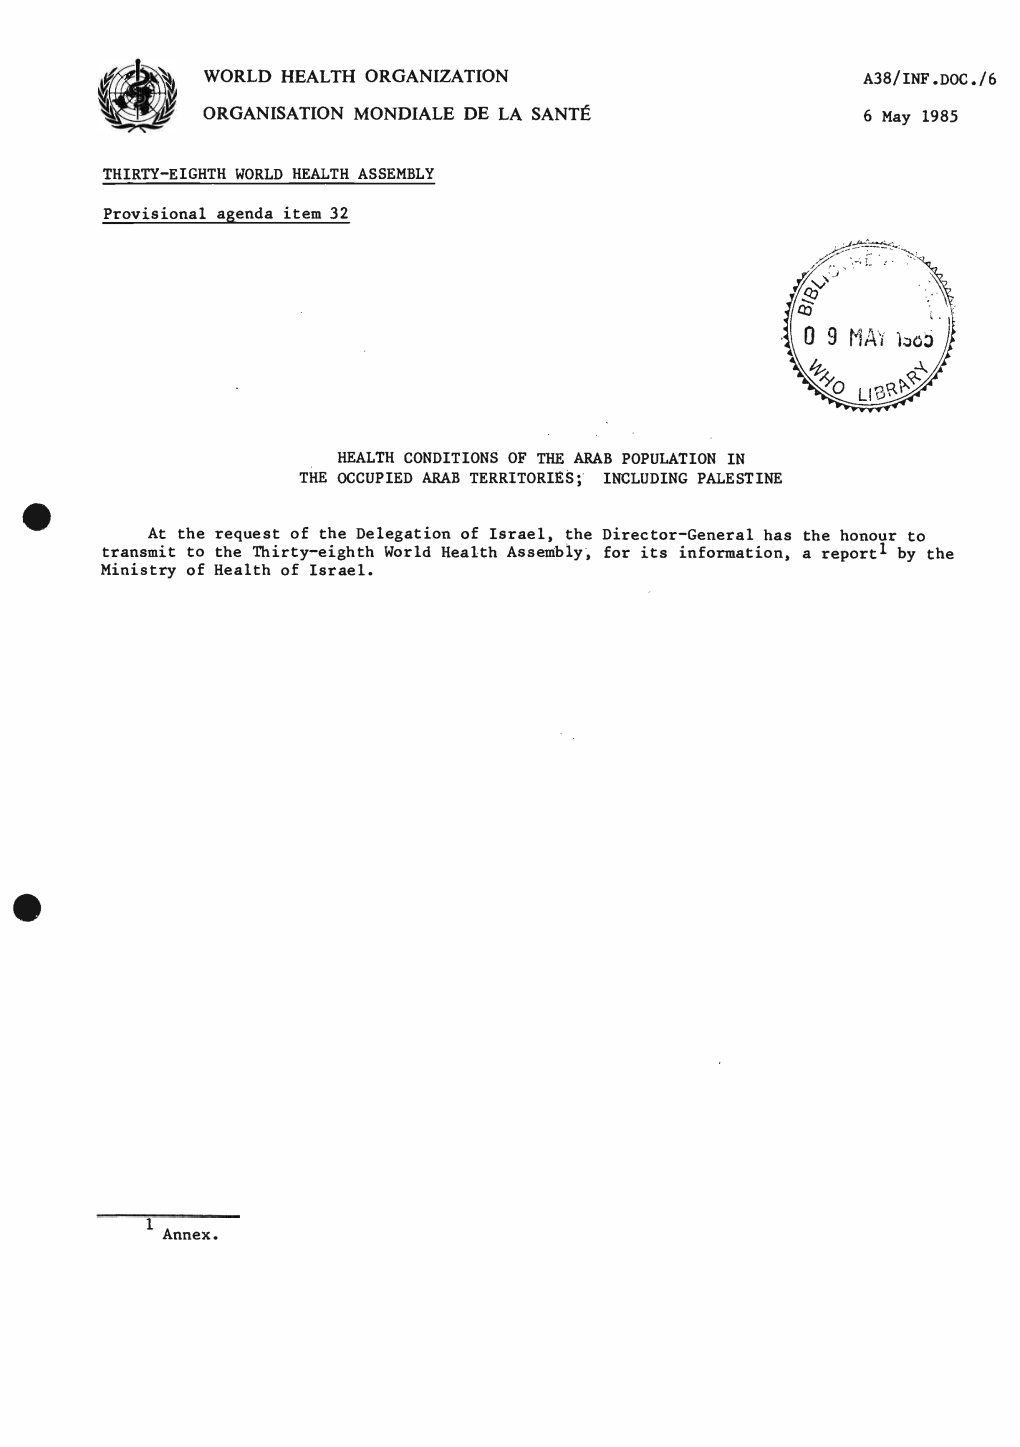 ORGANISATION MONDIALE DE LA SANTÉ Б May 1985